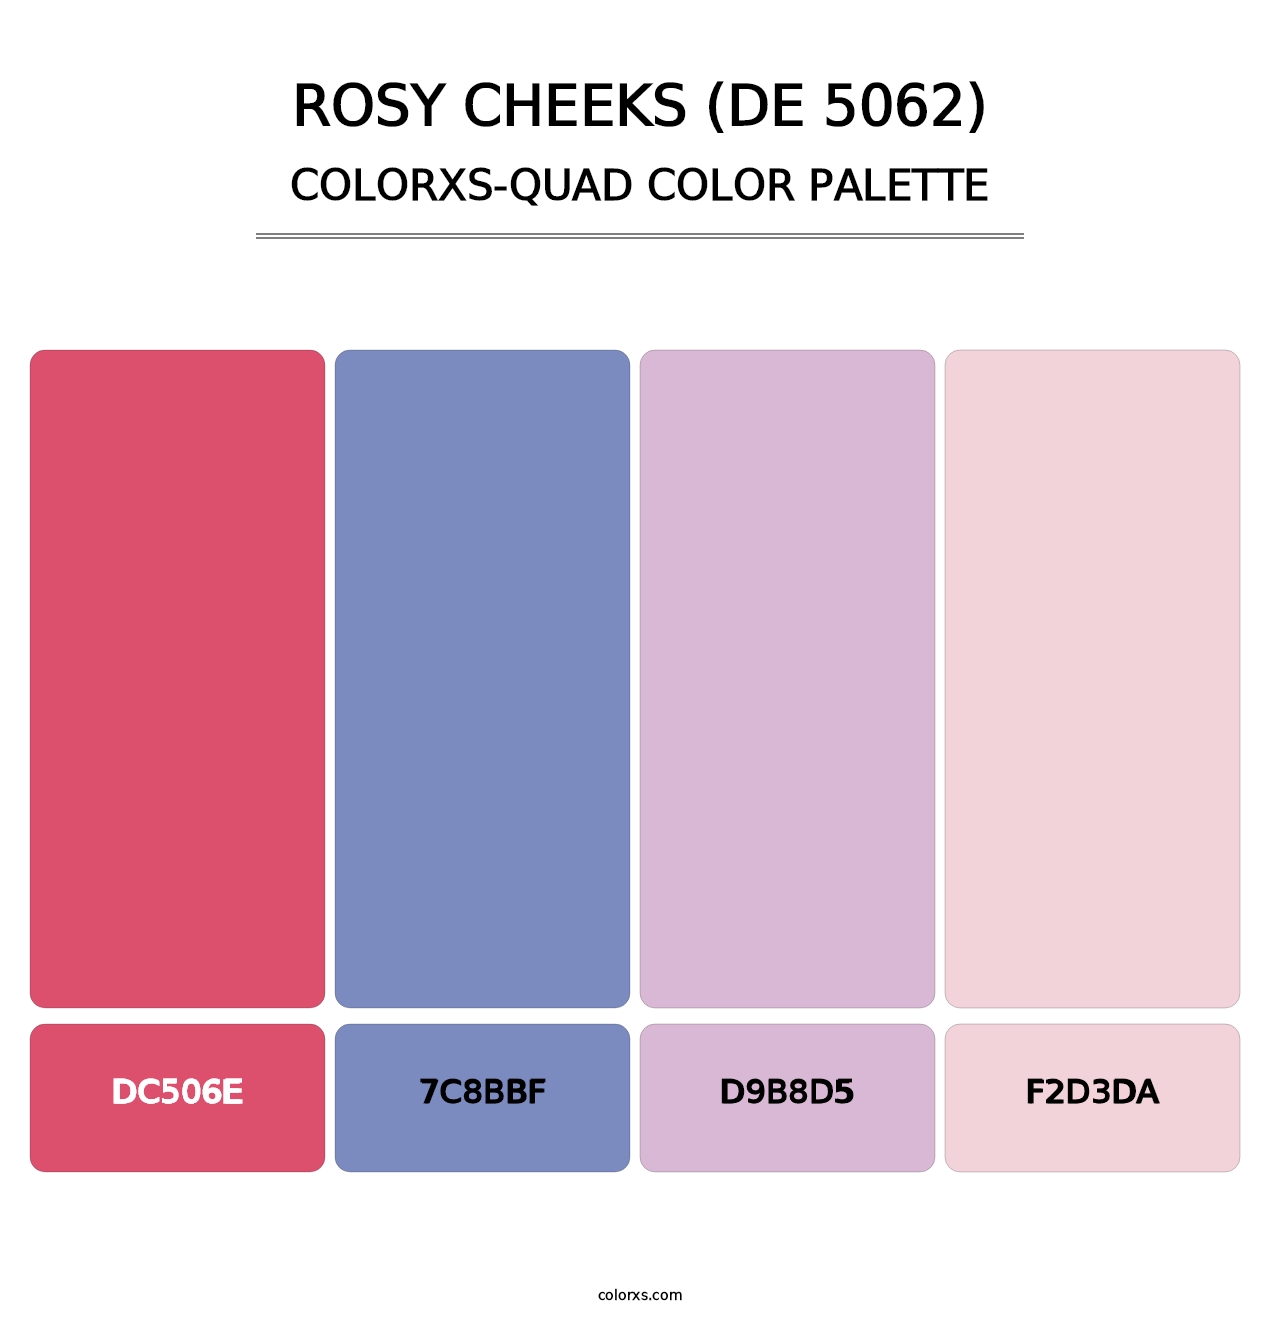 Rosy Cheeks (DE 5062) - Colorxs Quad Palette